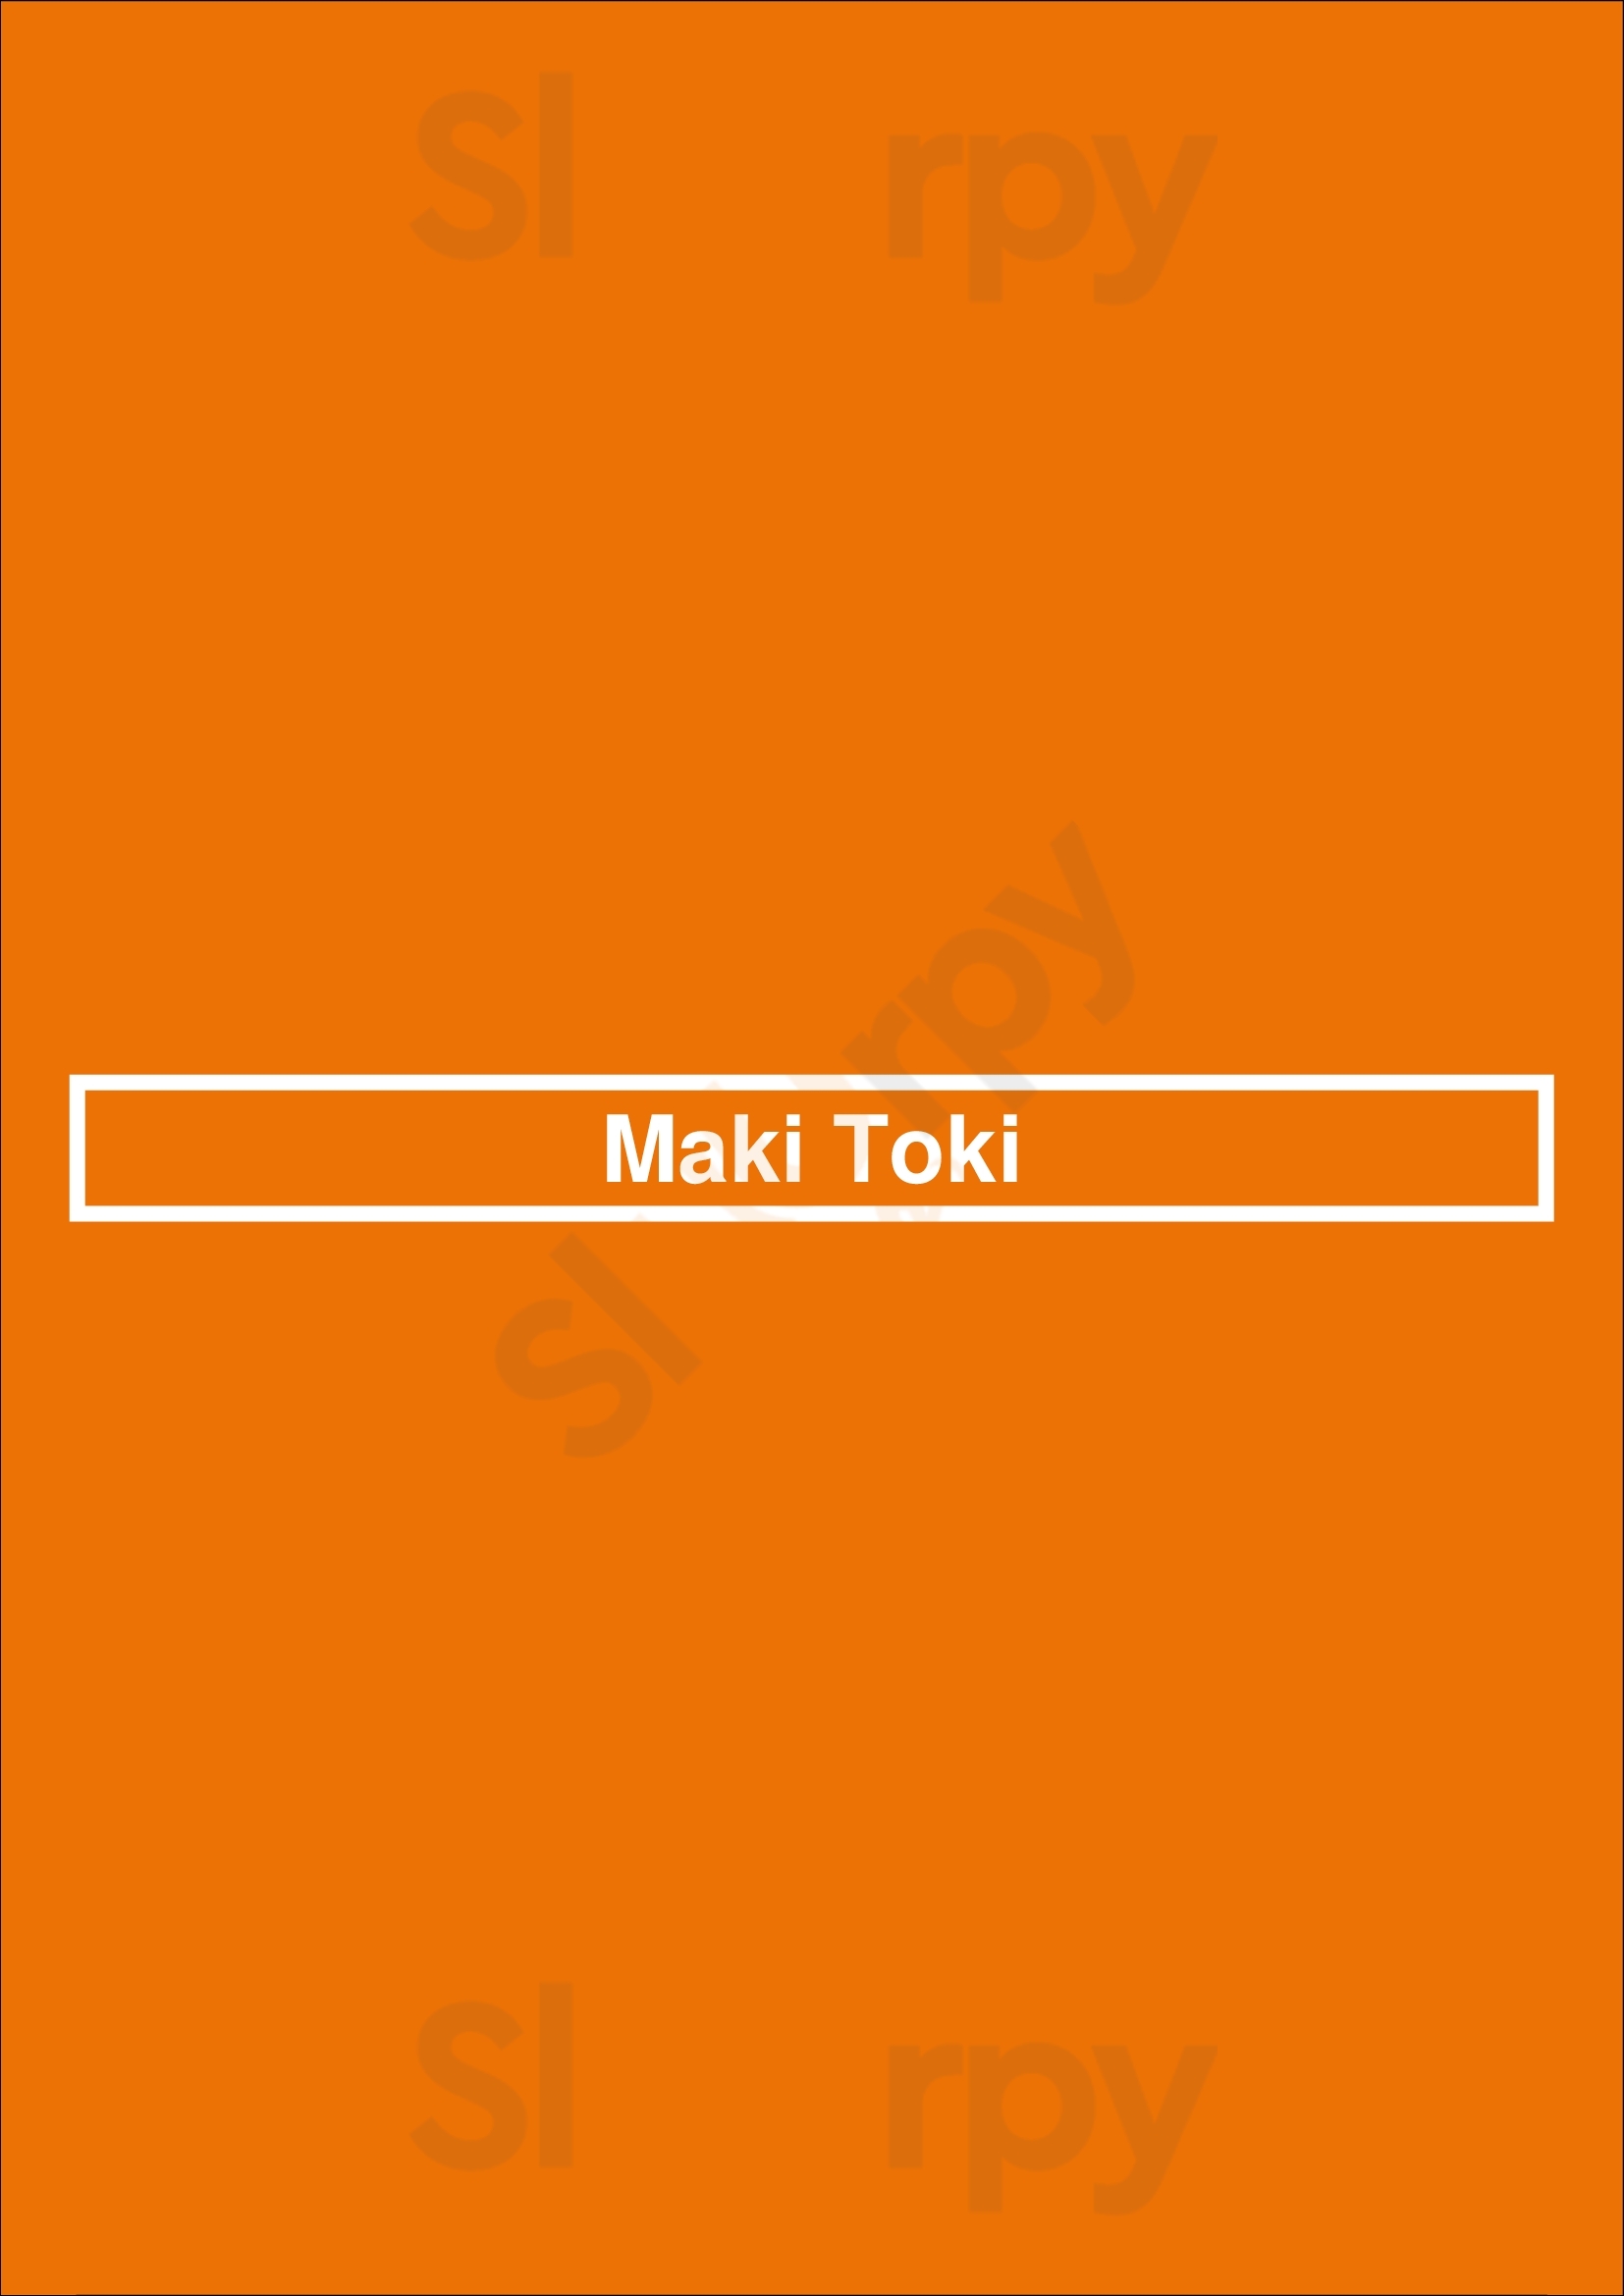 Maki Toki Austin Menu - 1